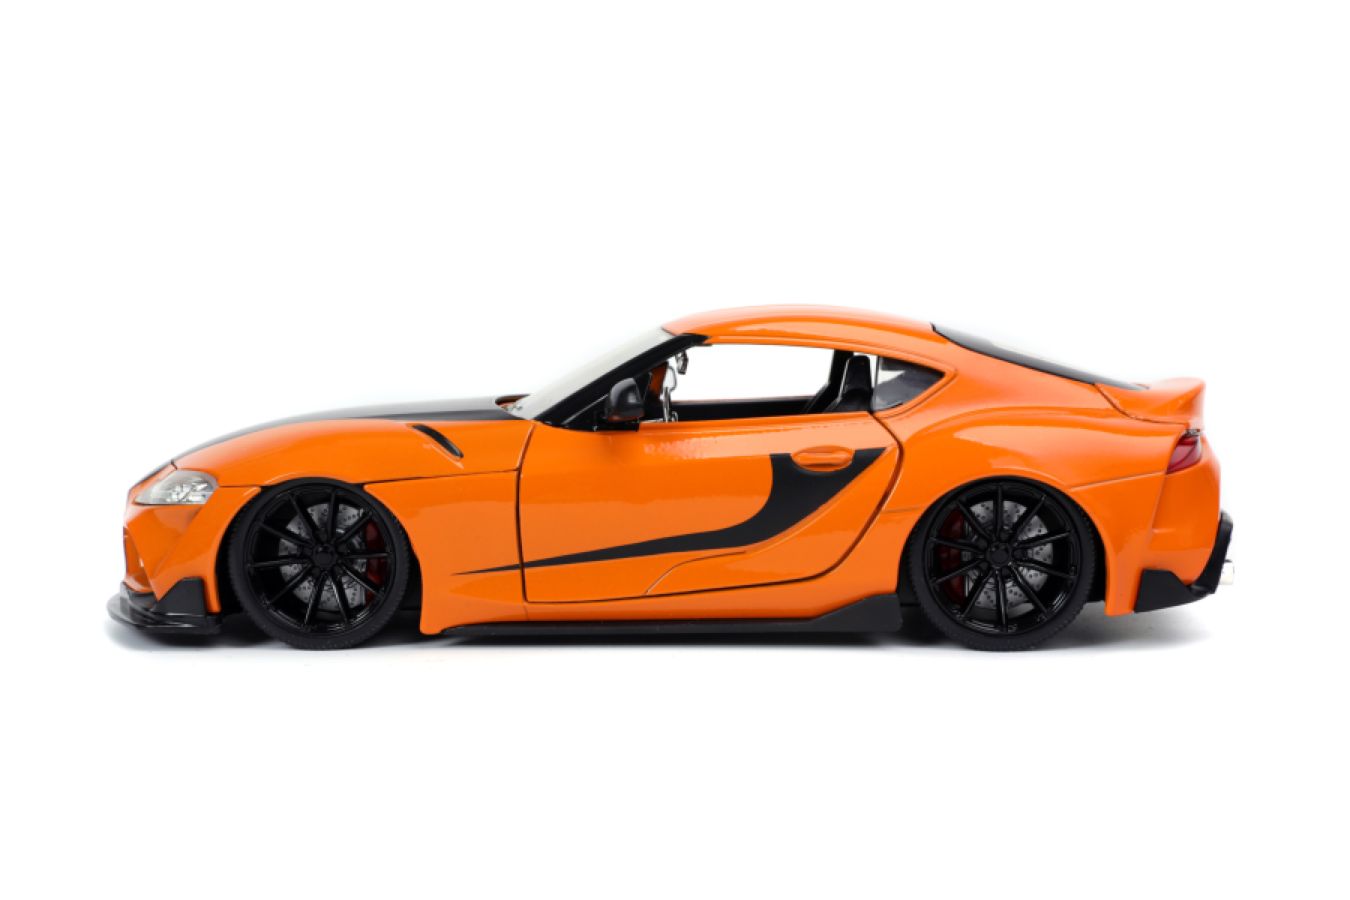 Fast and Furious 9: The Fast Saga - 2020 Toyota Supra Metallic Orange 1 ...